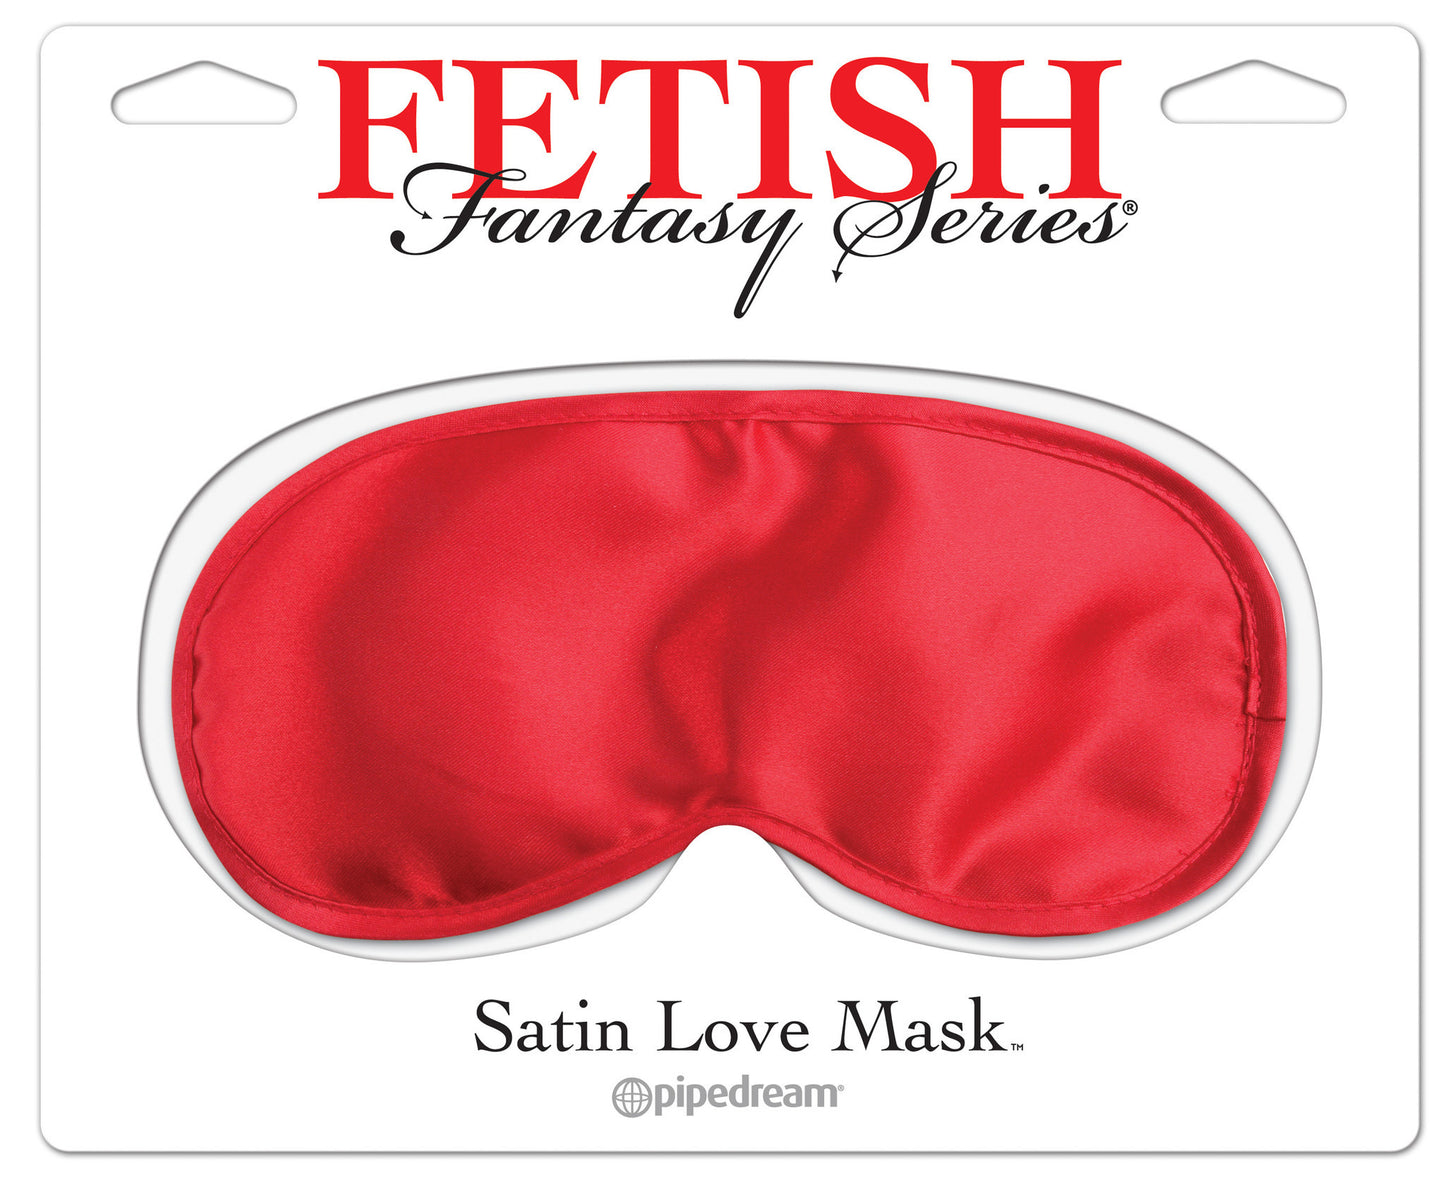 Fetish Fantasy Satin Mask  - Club X